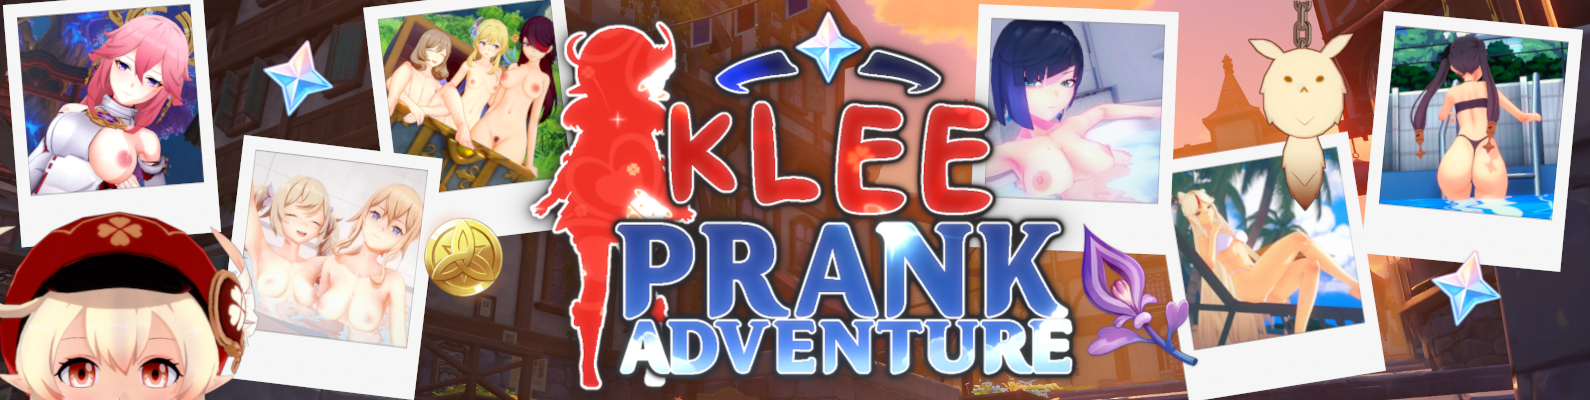 Klee Prank Adventure1.png